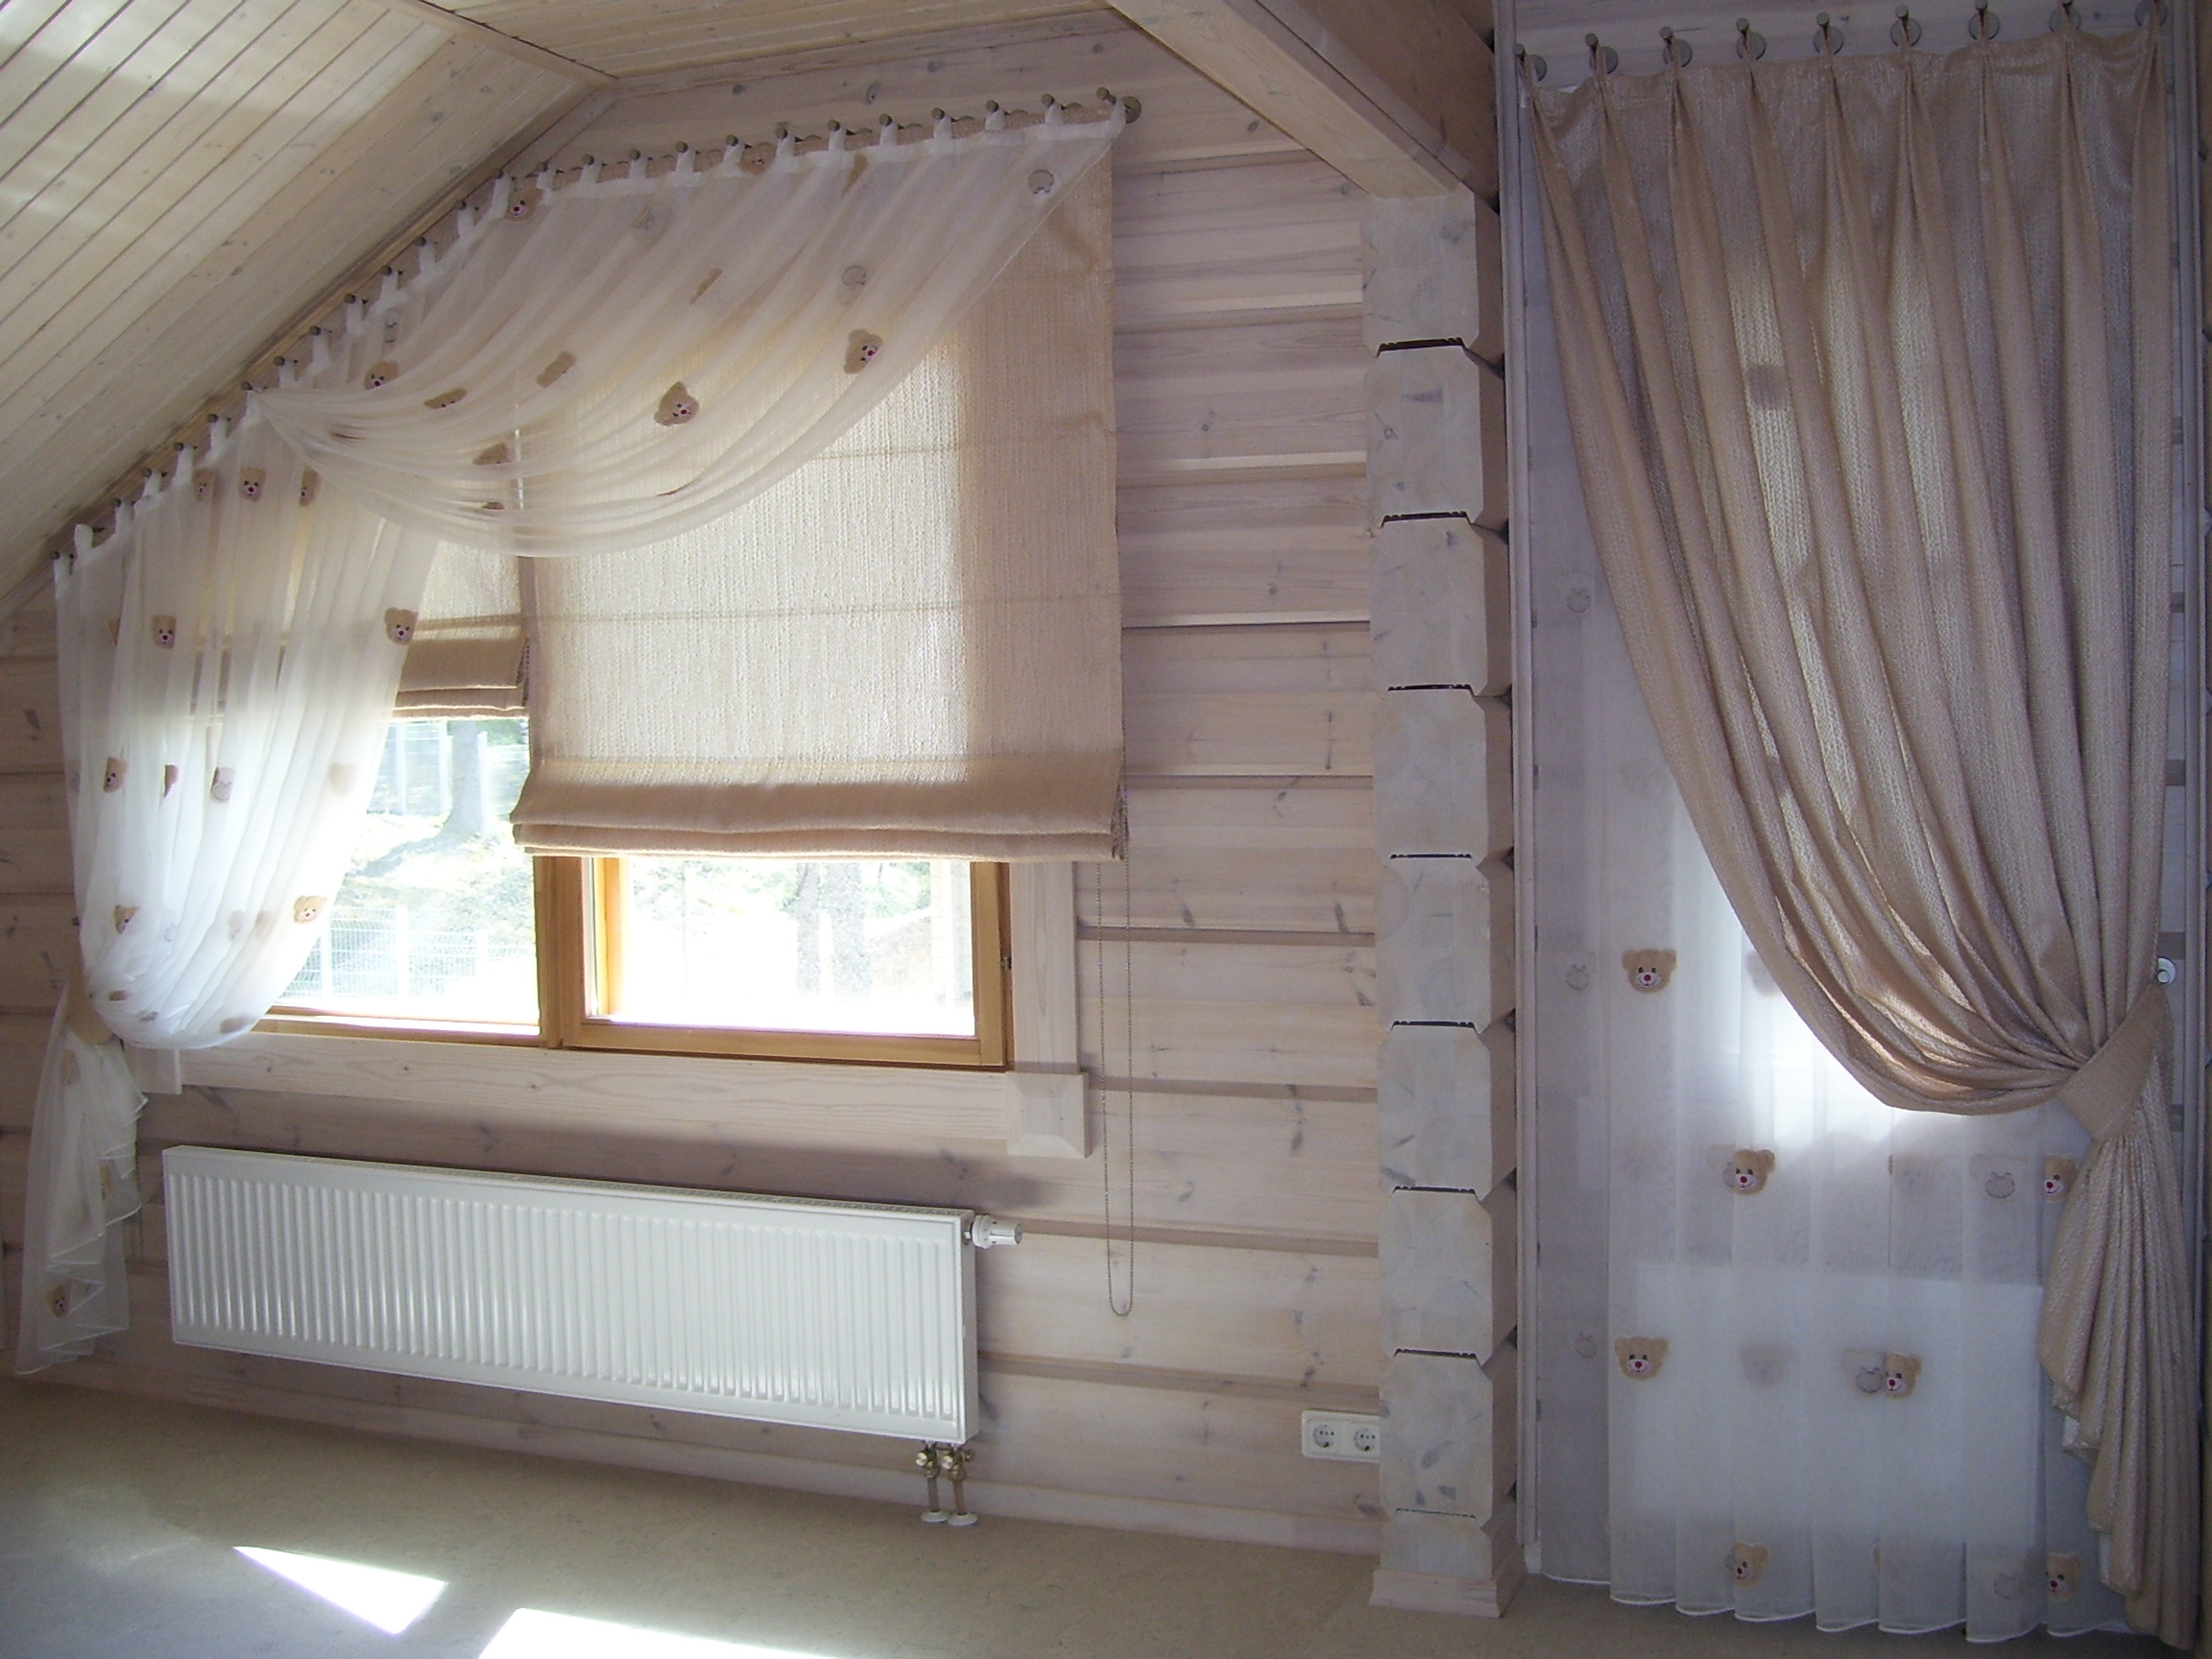 фото шторы на деревянных окнах